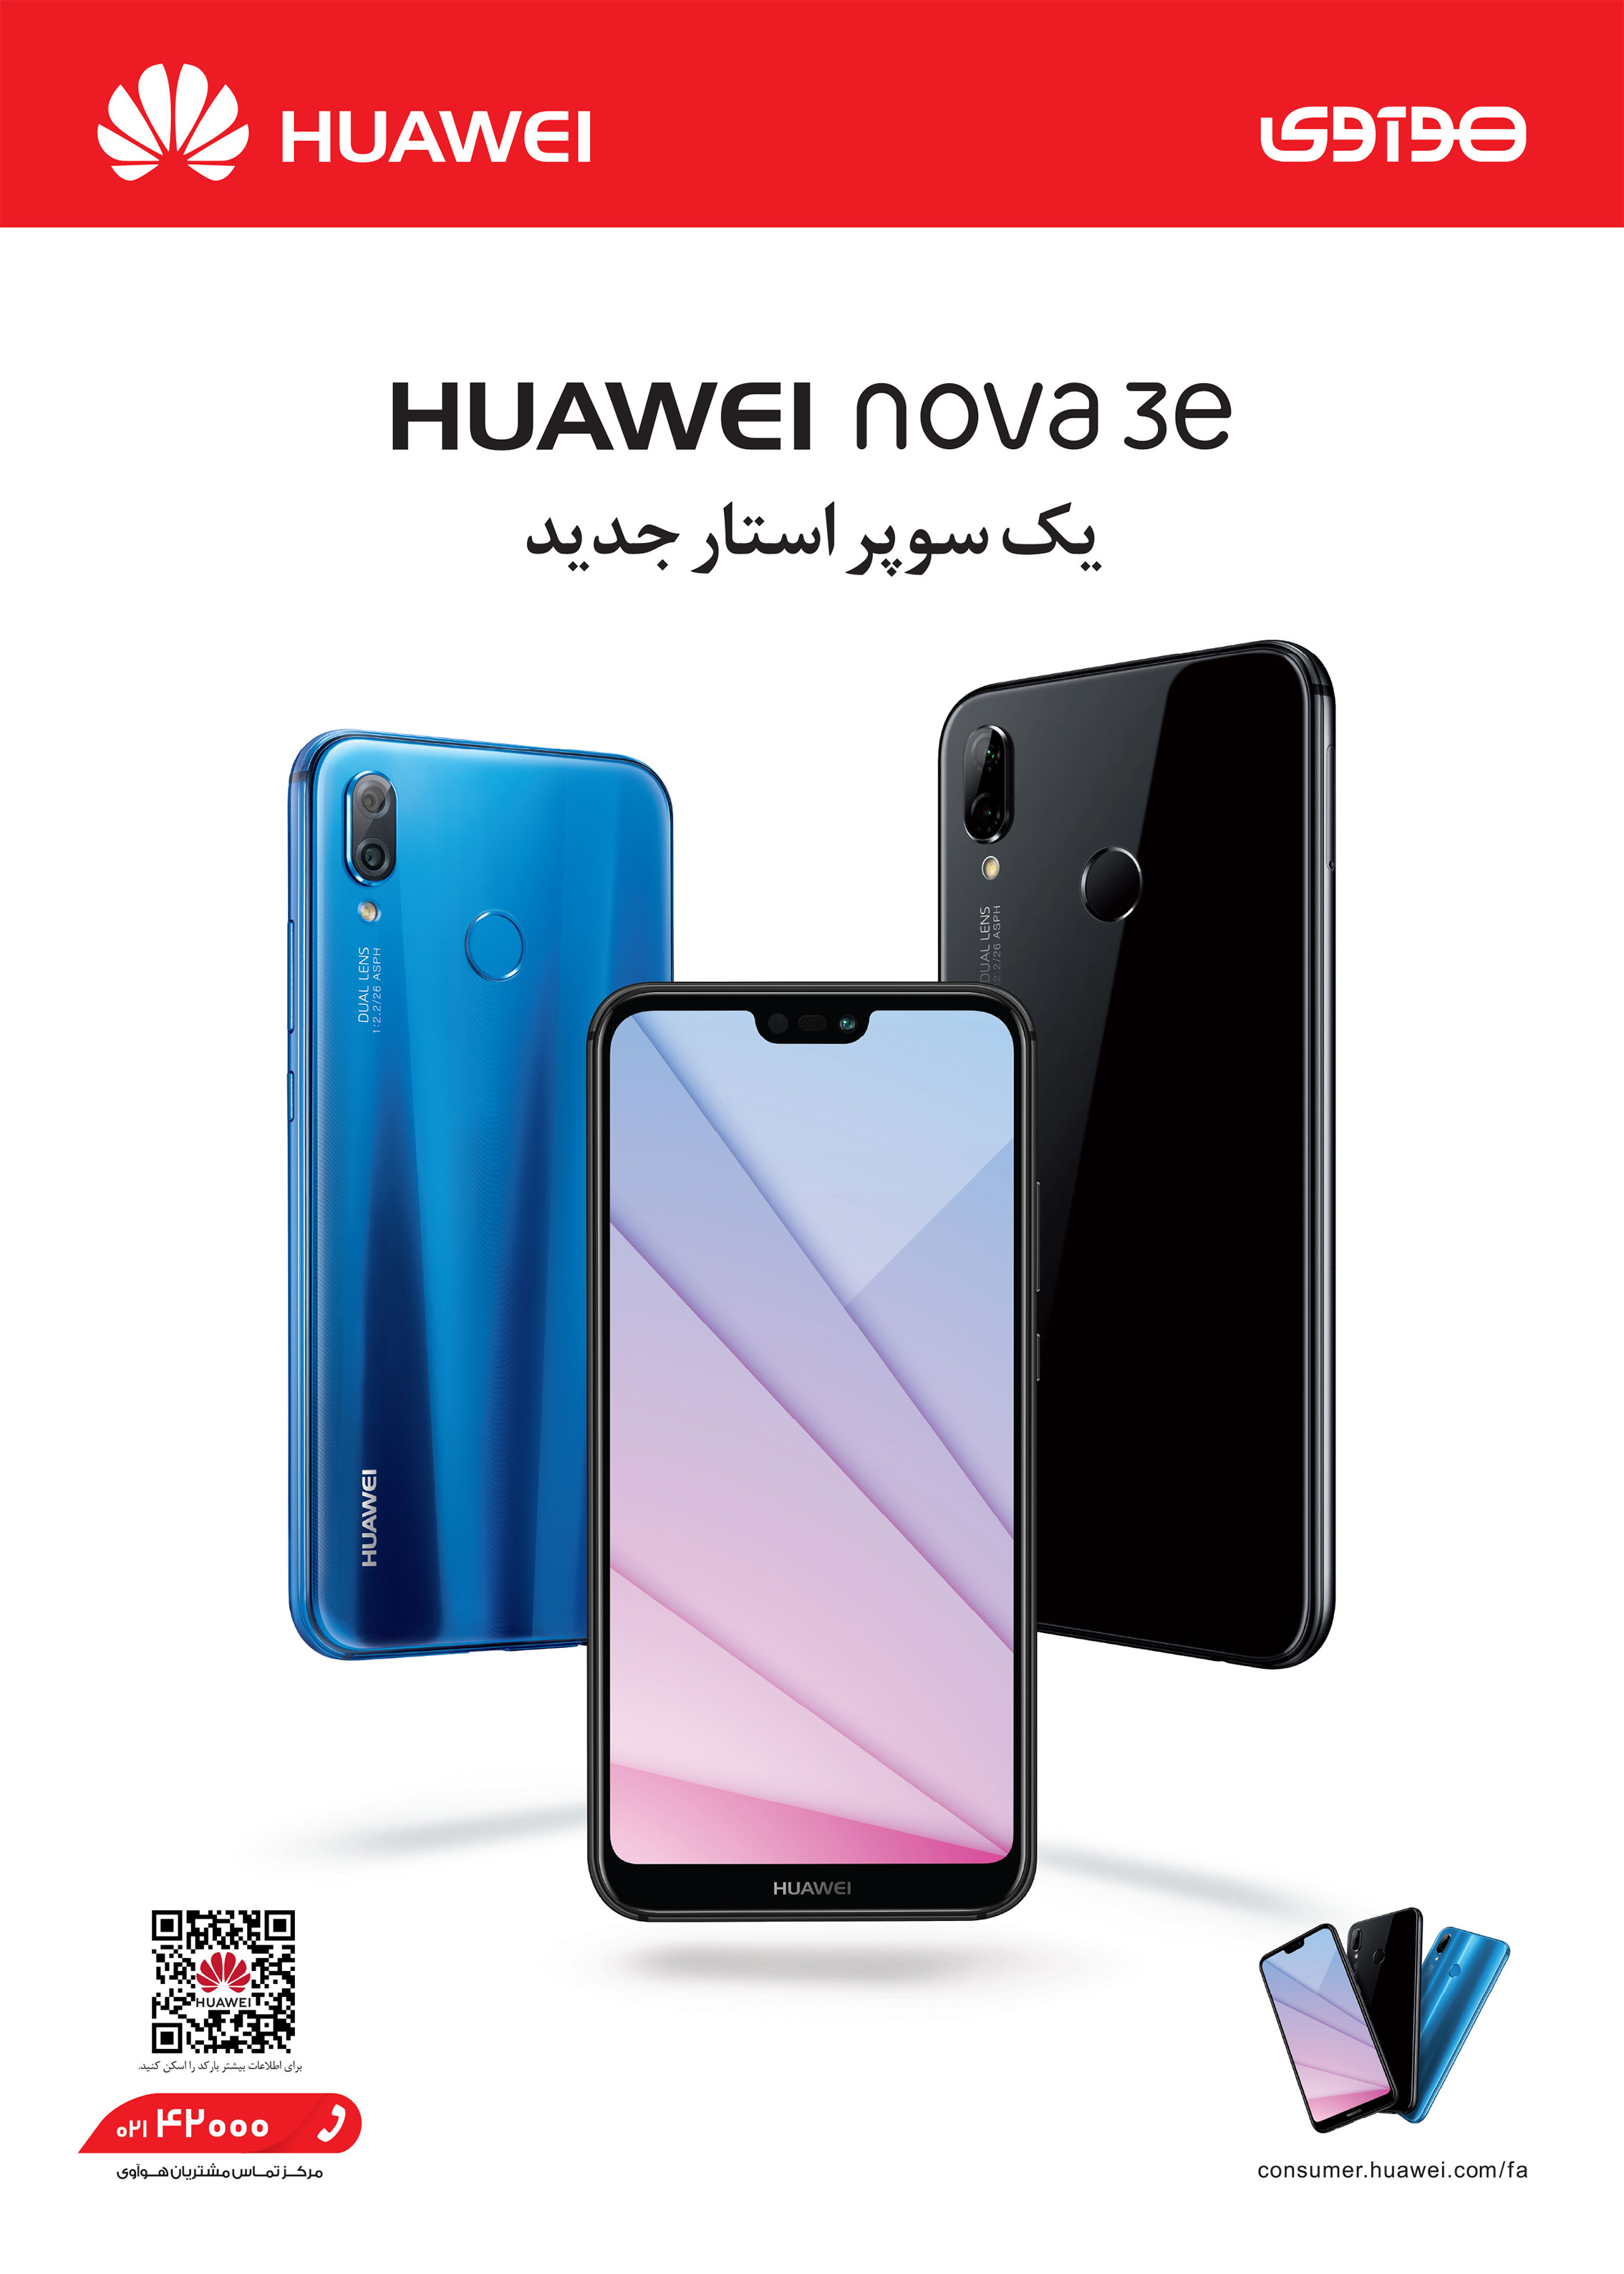 گوشی Huawei nova 3e فردا به بازارهای سراسر کشور عرضه می گردد